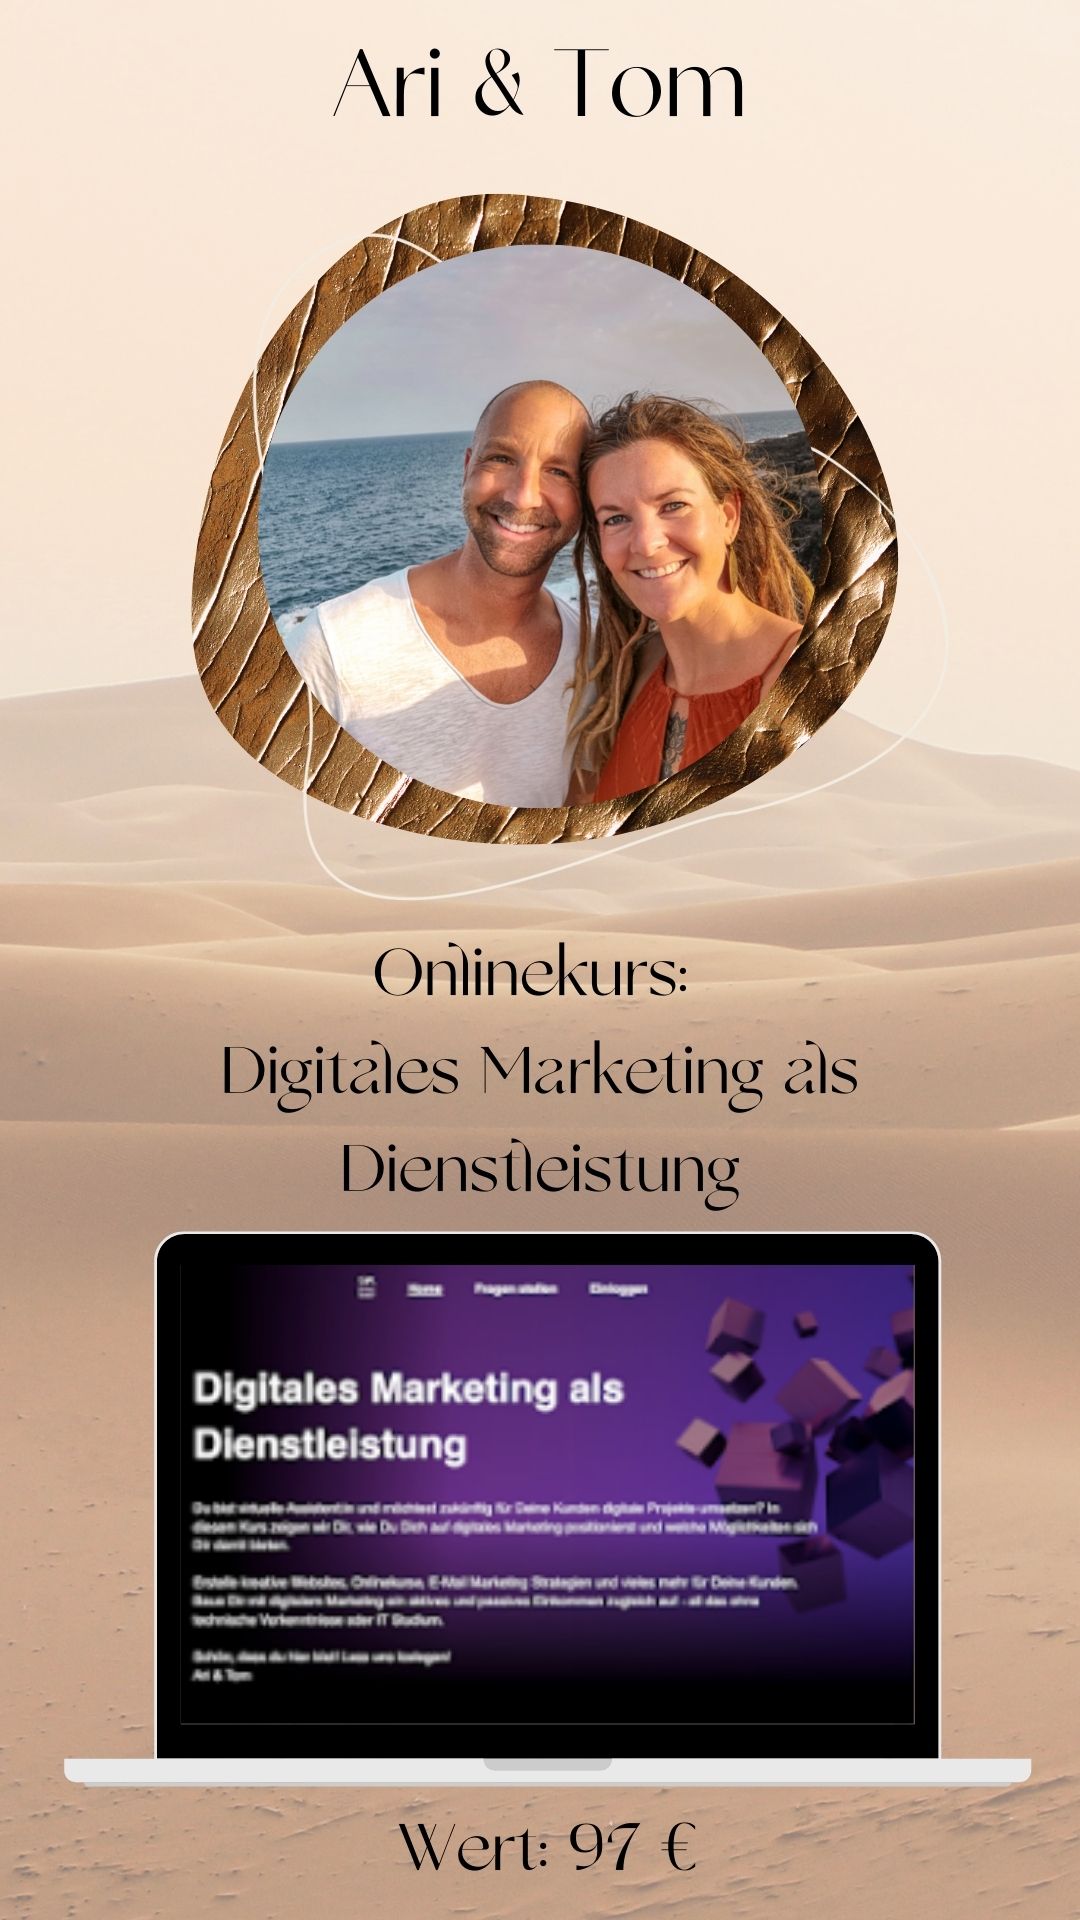 Digitales Marketing als Dienstleistung